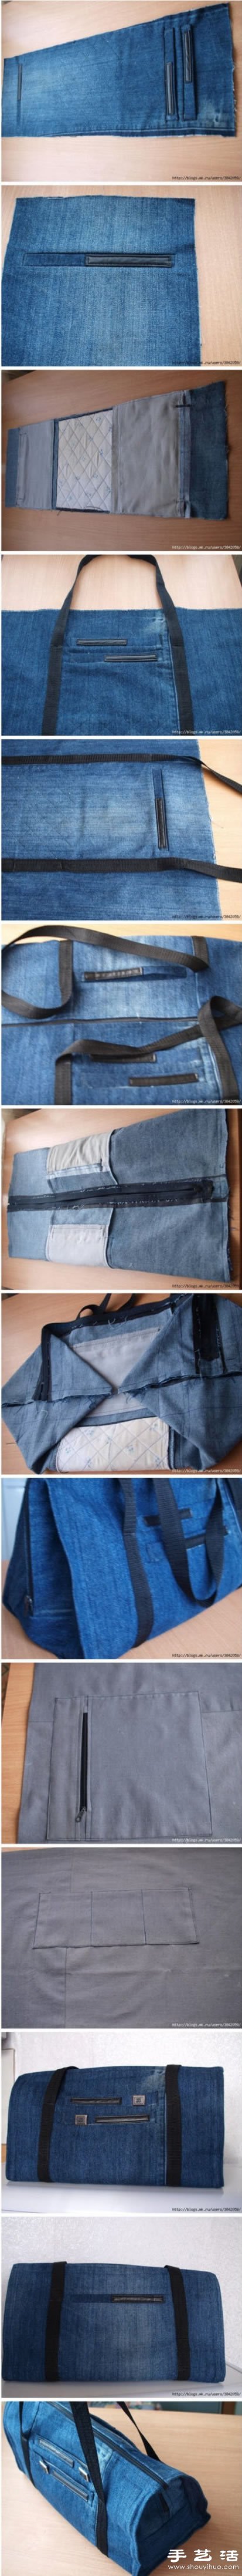 牛仔裤旧物改造DIY制作大空间行李包